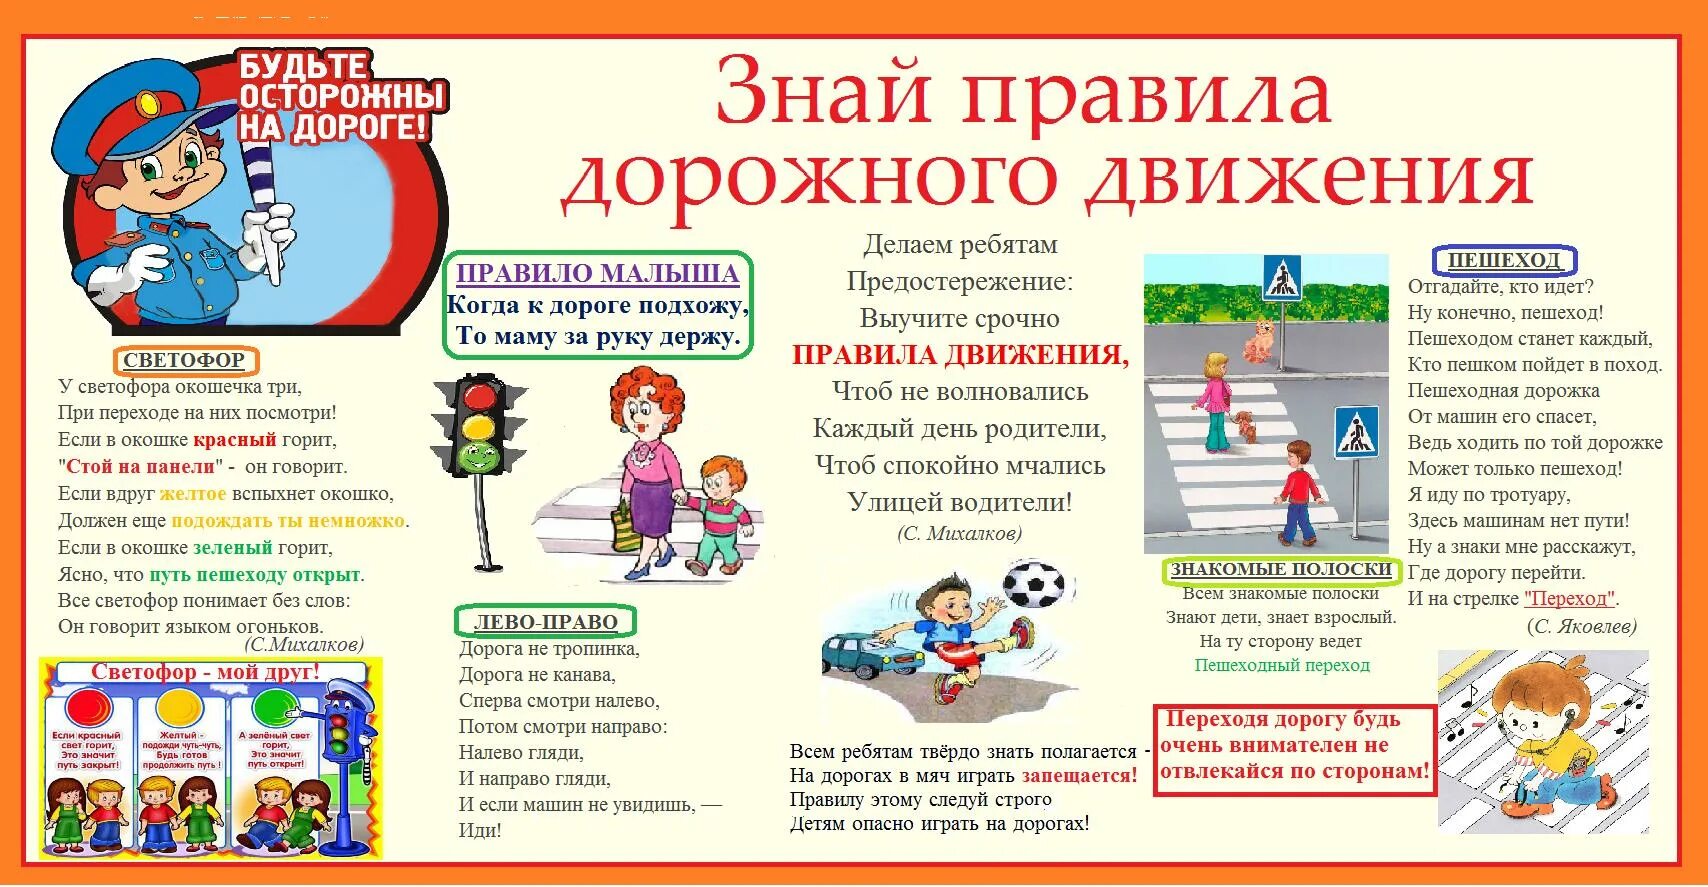 Правила дорожного движения для детей. Плакат по правилам дорожного движения для школьников. Плакат по правилам дорожного движения для детей. ПДД правила дорожного движения. Шагаем осторожно